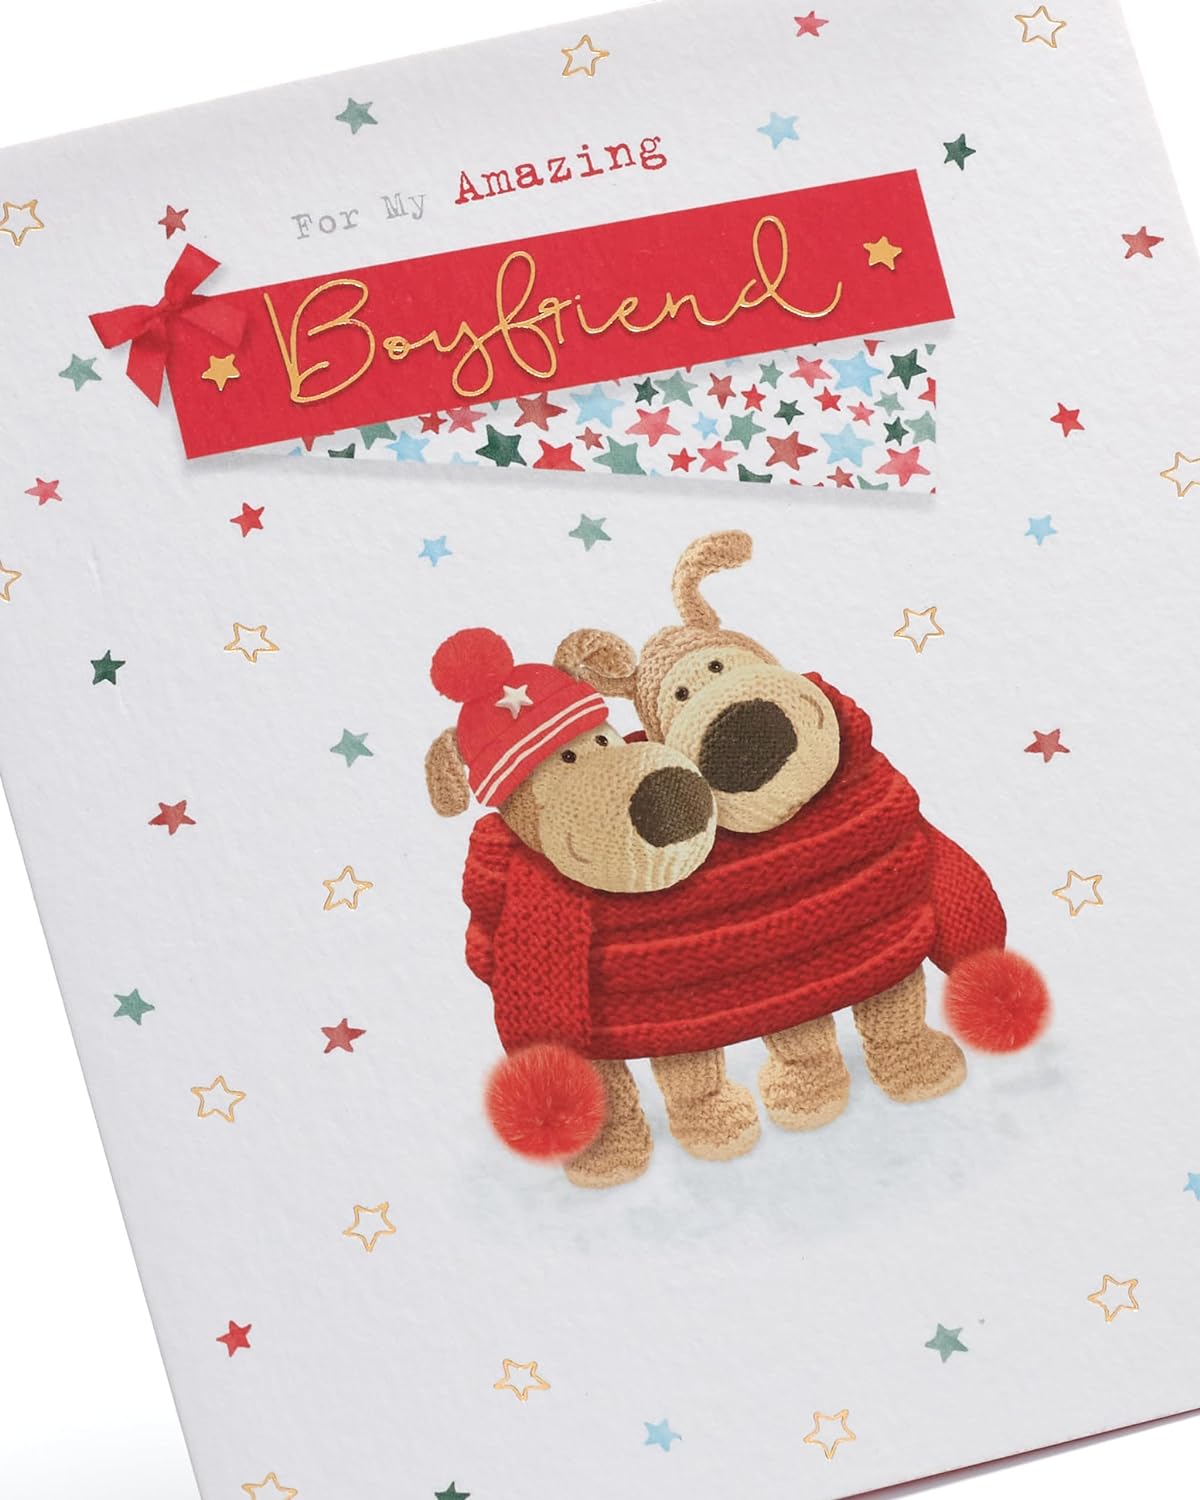 Boyfriend Christmas Card Boofle Cute Design 